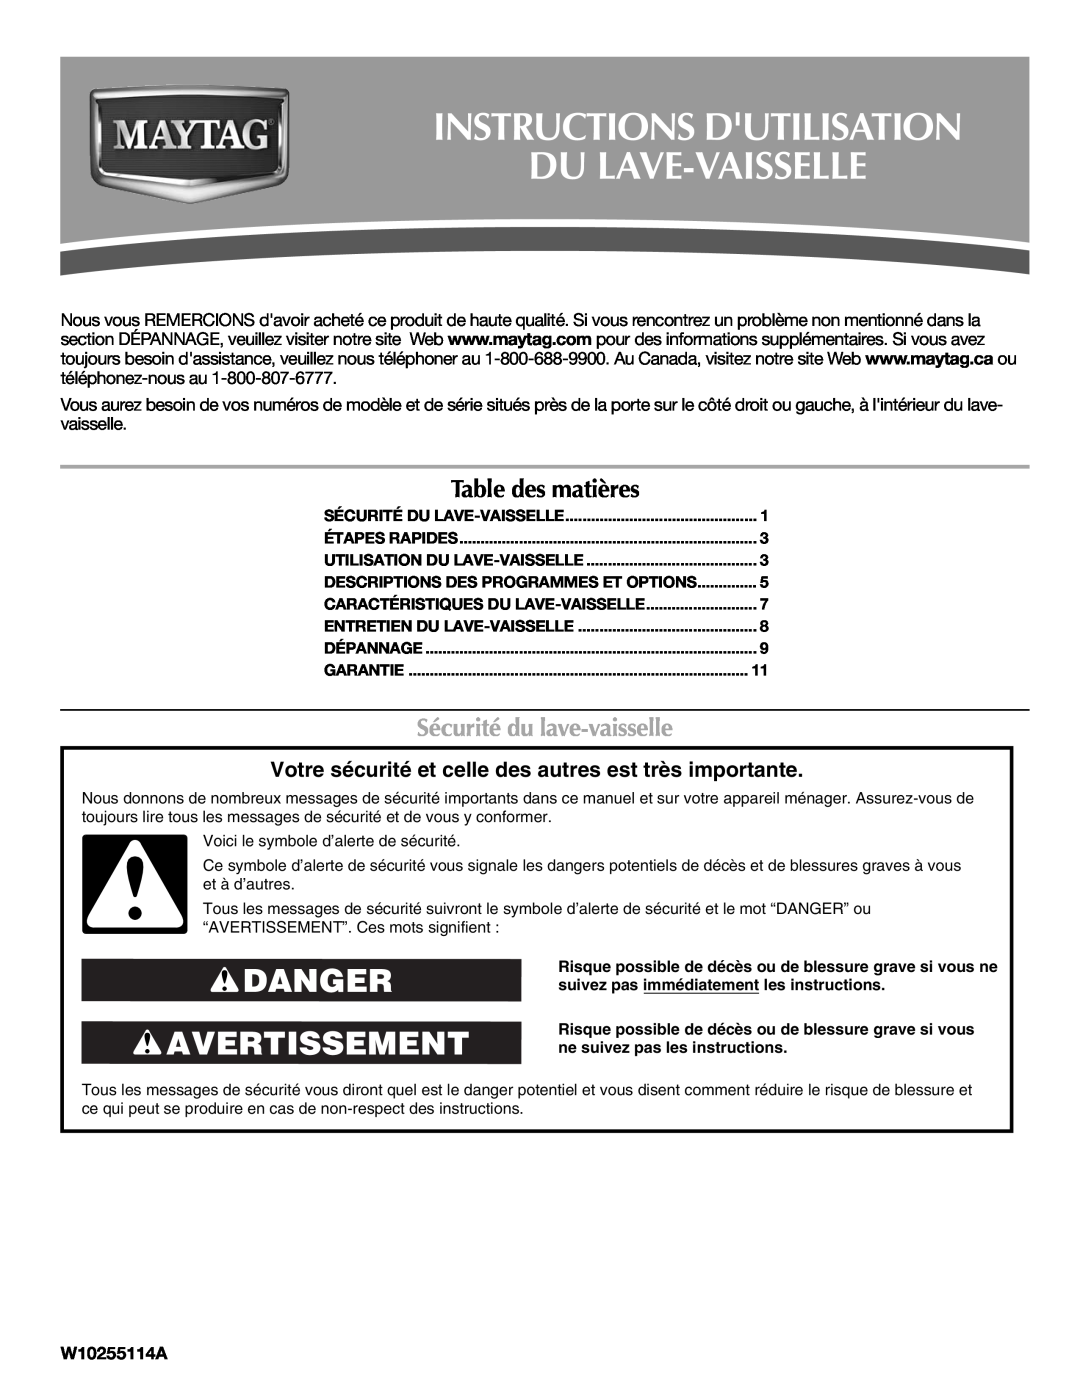 Maytag W10255114A Instructions Dutilisation Du Lave-Vaisselle, Danger Avertissement, Table des matières, Étapes Rapides 